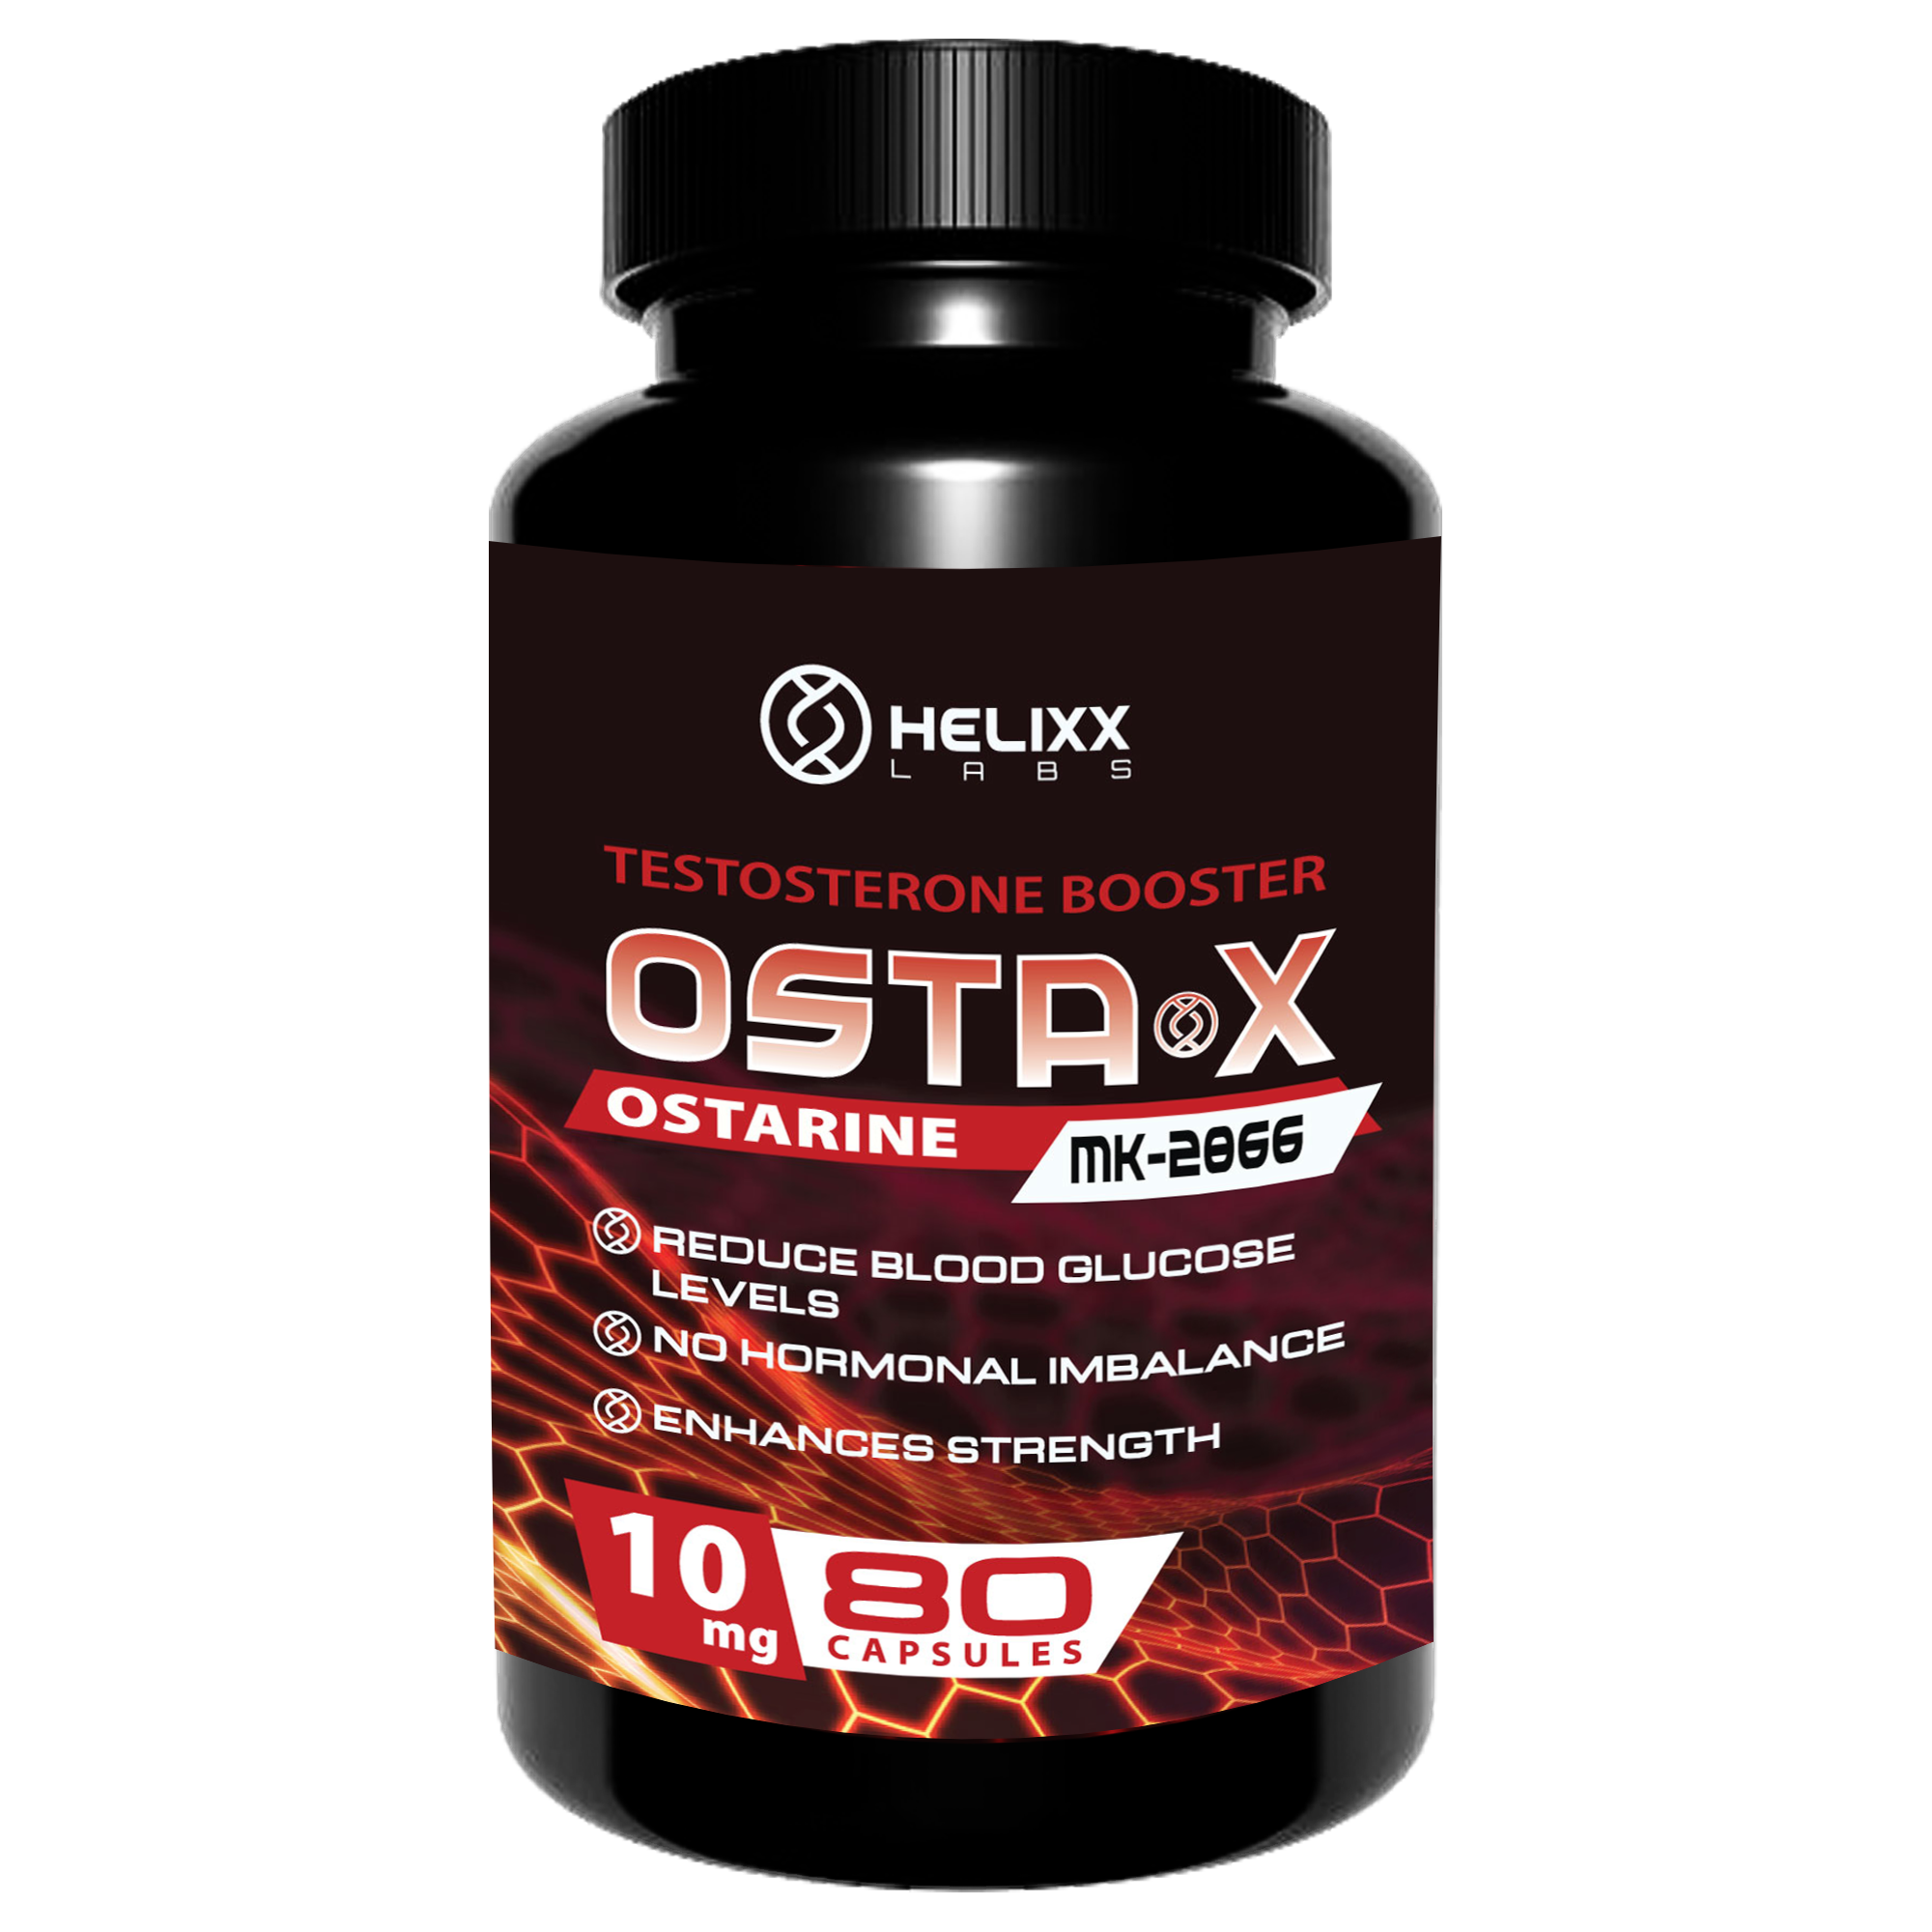 Helixx OSTA X (10mg – 80 capsules) helixx-osta-x-10mg-80-capsules Vitamins & Supplements Helixx